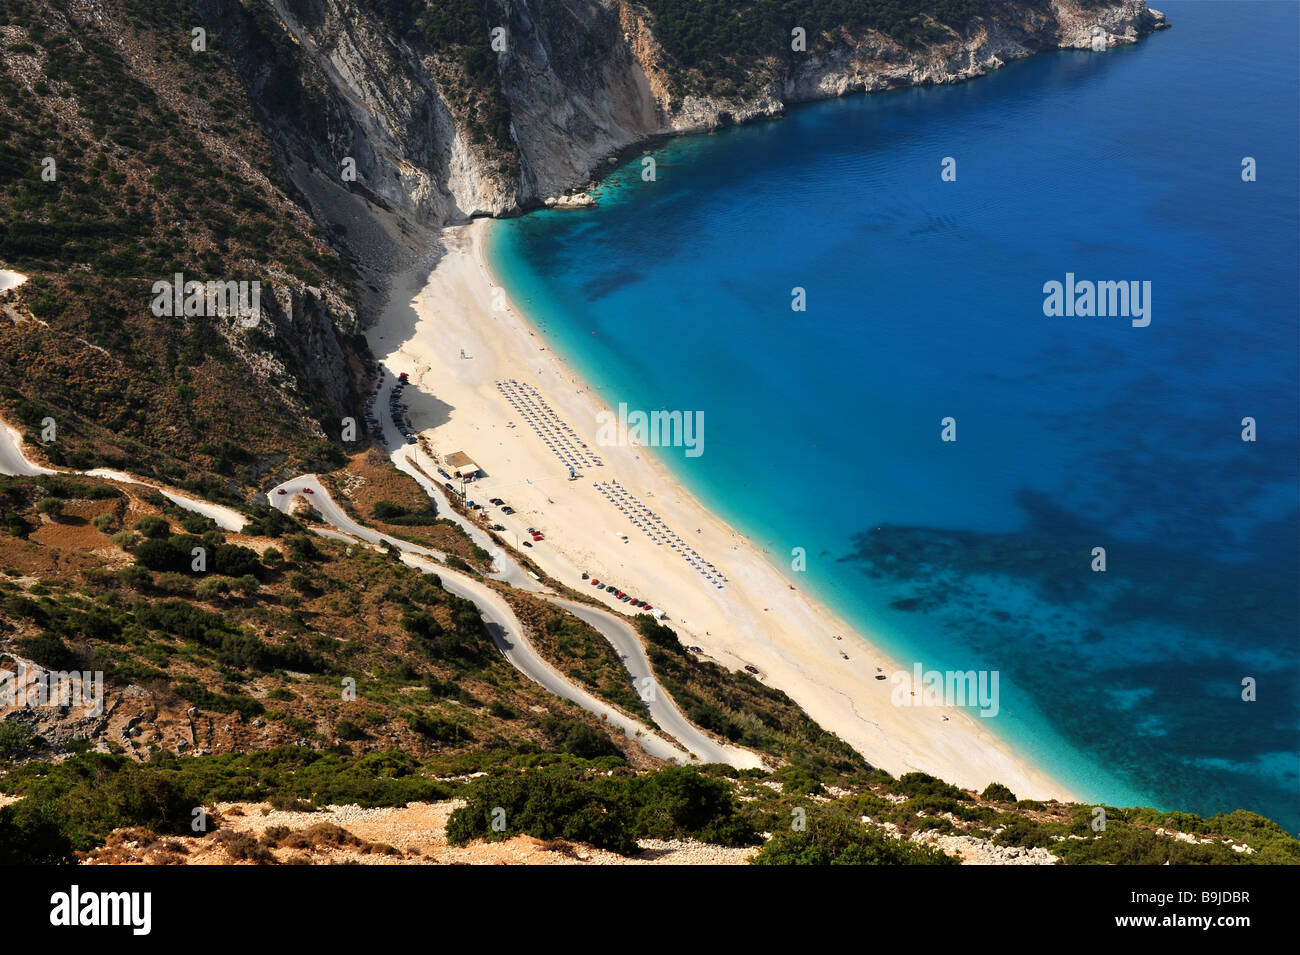 Myrtos beach in Zankinthos (Zante), on the Ionian Island of Greece Stock Photo